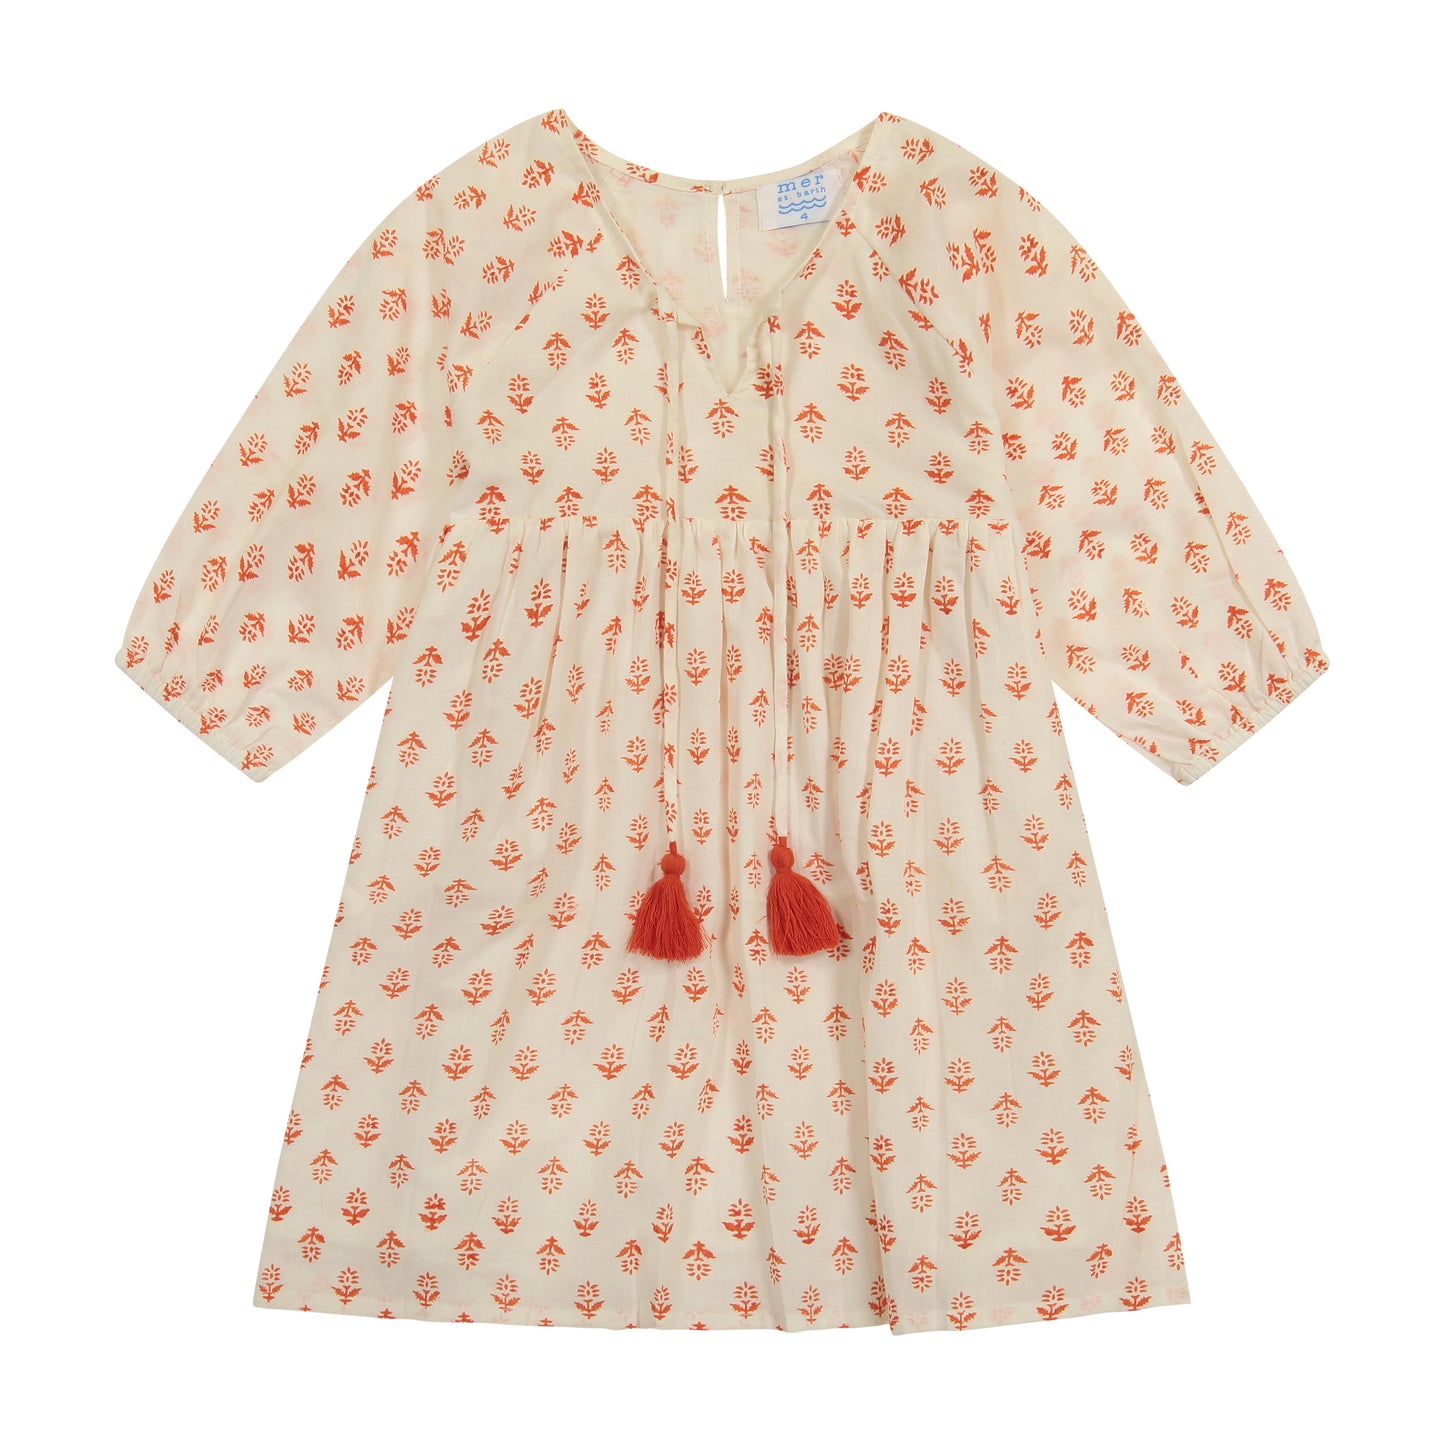 Sara Girl's Popover Dress Coral Block Print